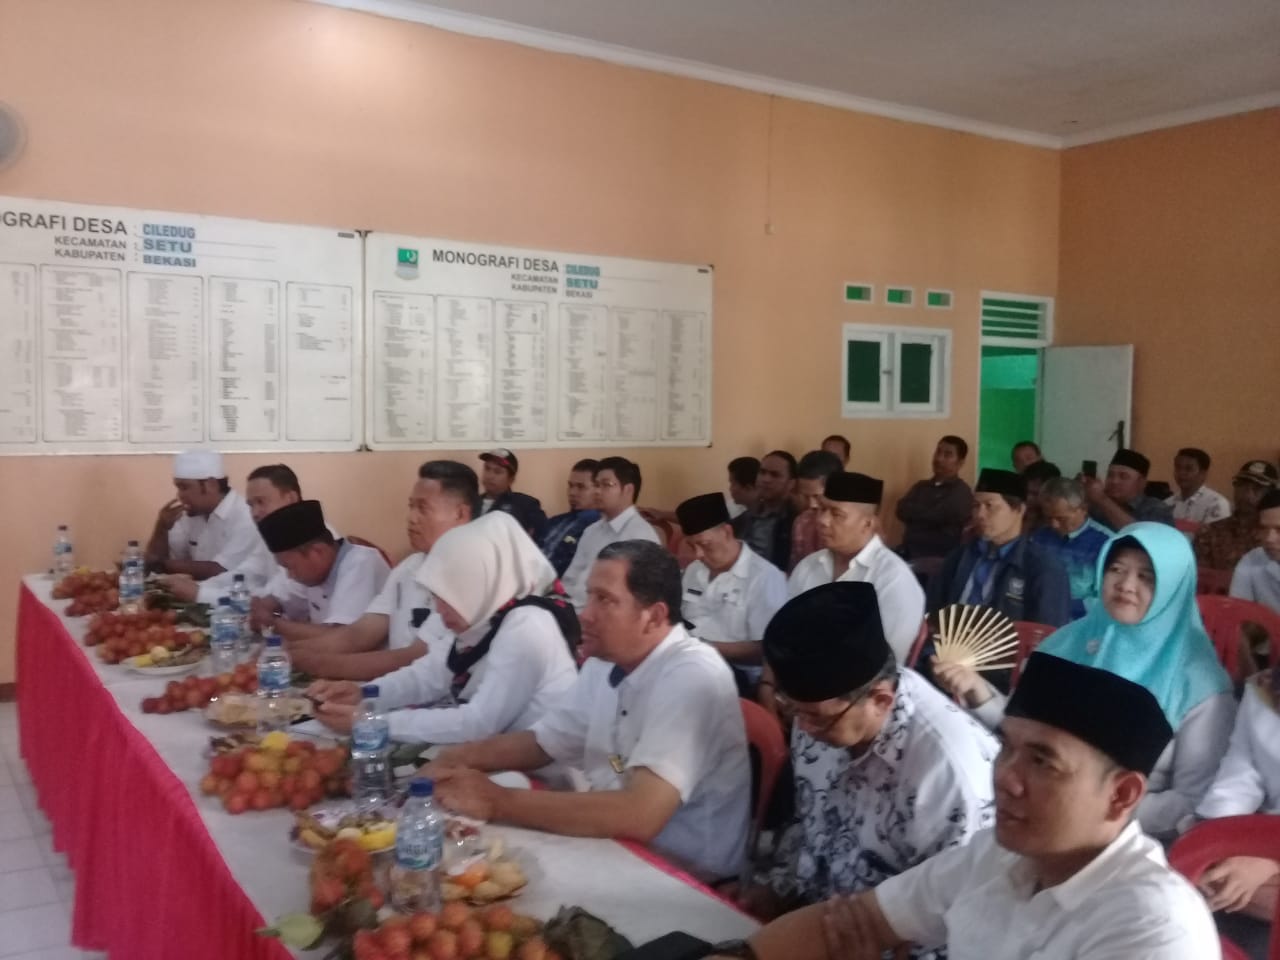 Masalah Keamanan dan Kesehatan Jadi Pembahasan di Minggon Kecamatan Setu